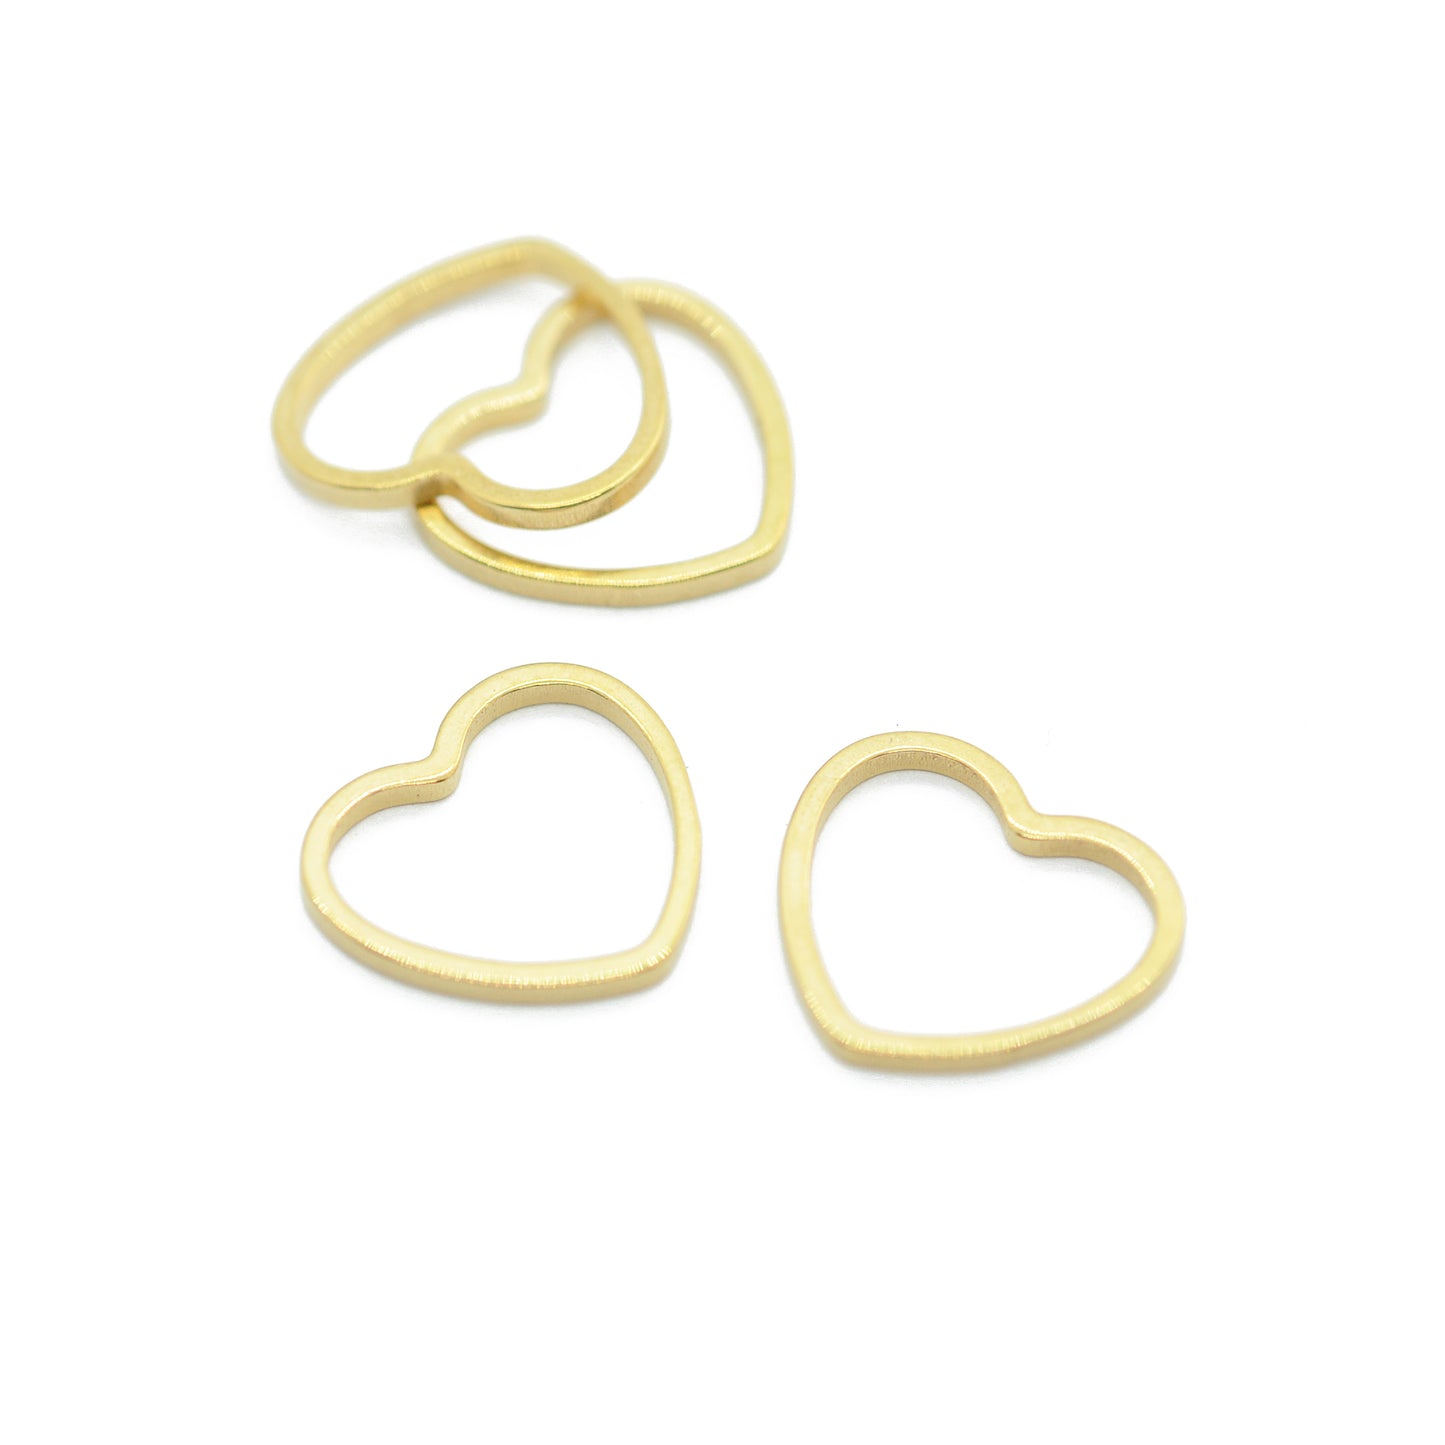 Edelstahl Open Heart Verbinder Anhänger / vergoldet / 14 mm